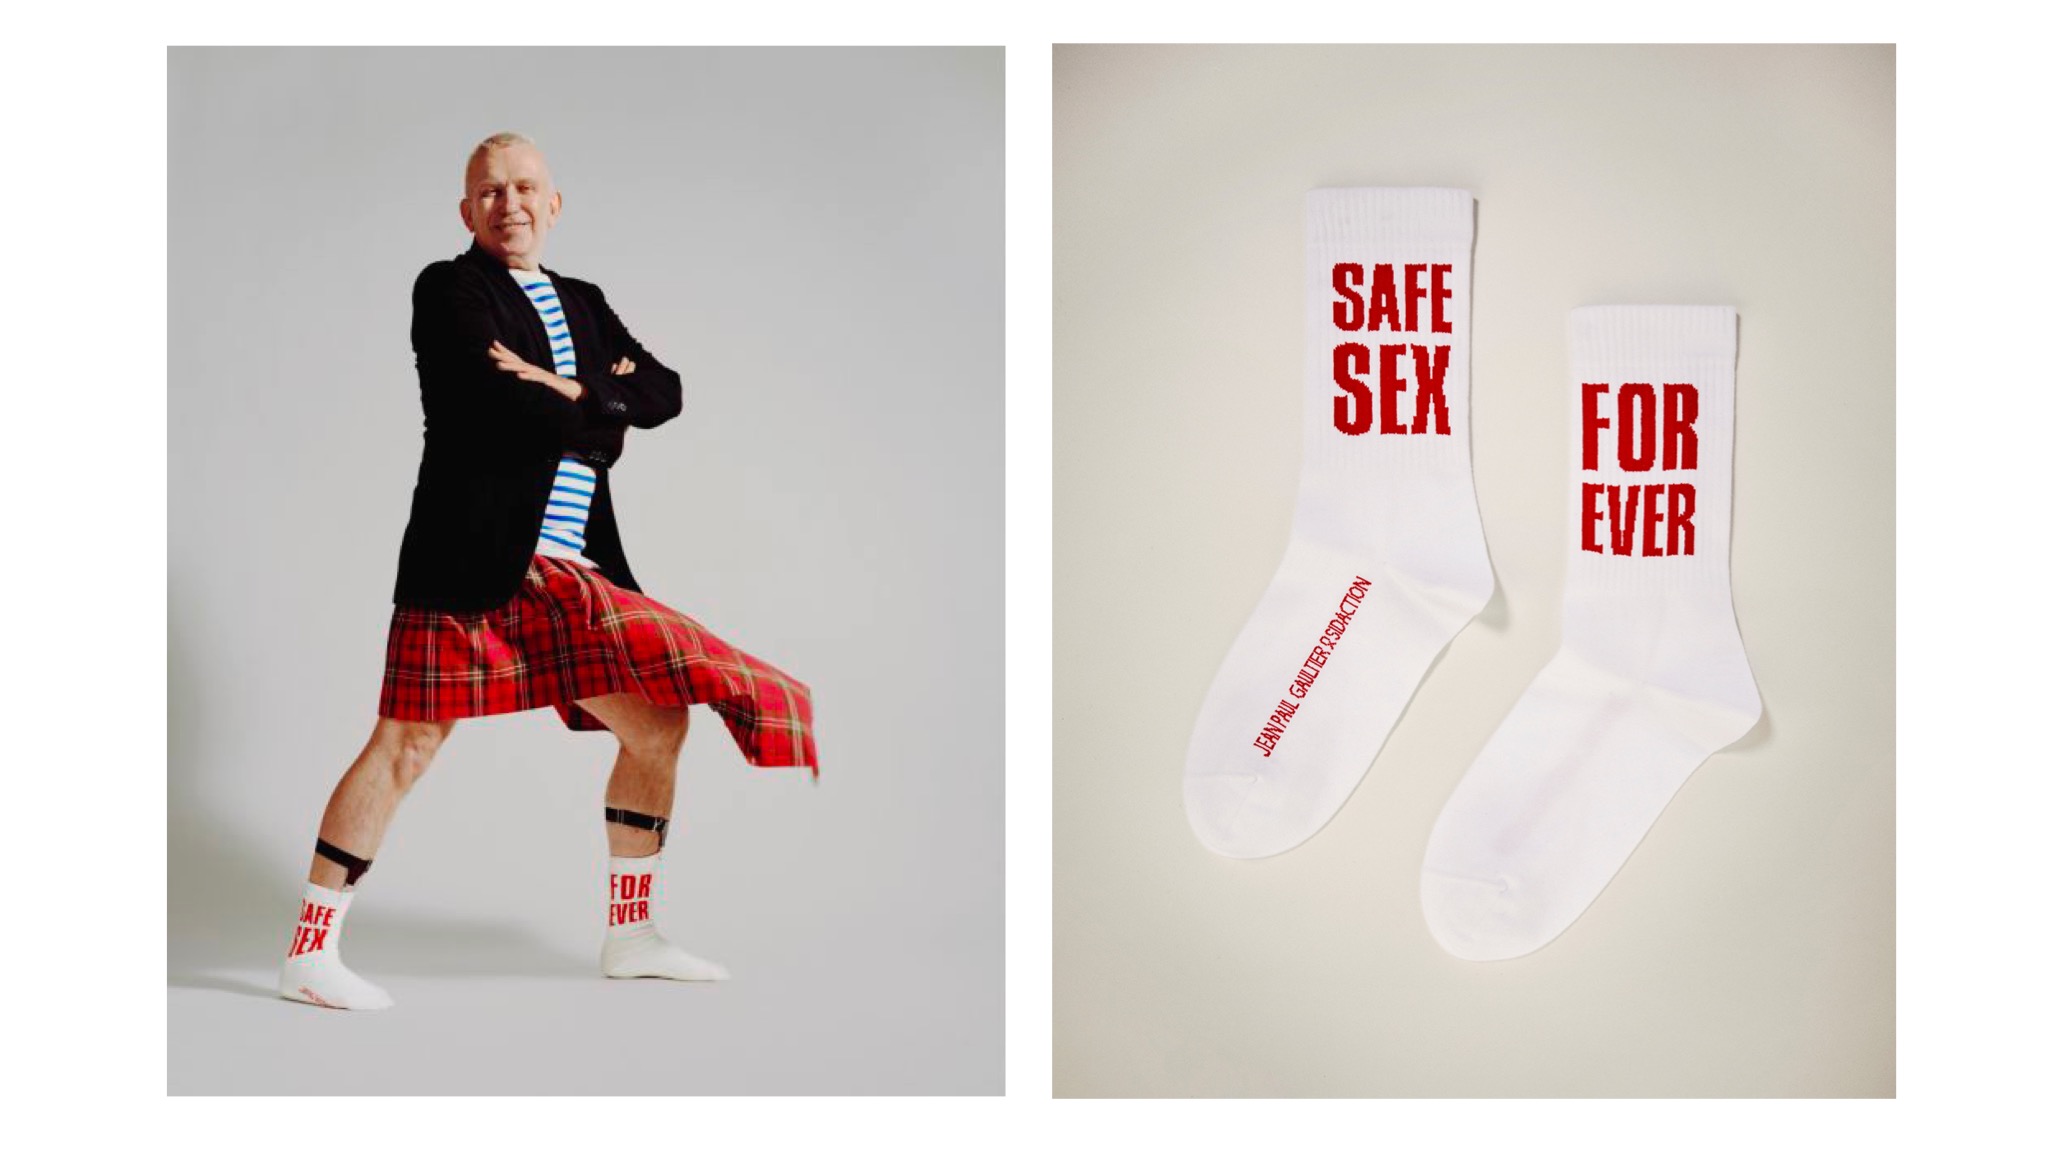 Жан-Поль Готье выпустил носки Safe Sex Forever в поддержку борьбы со СПИДом и ВИЧ